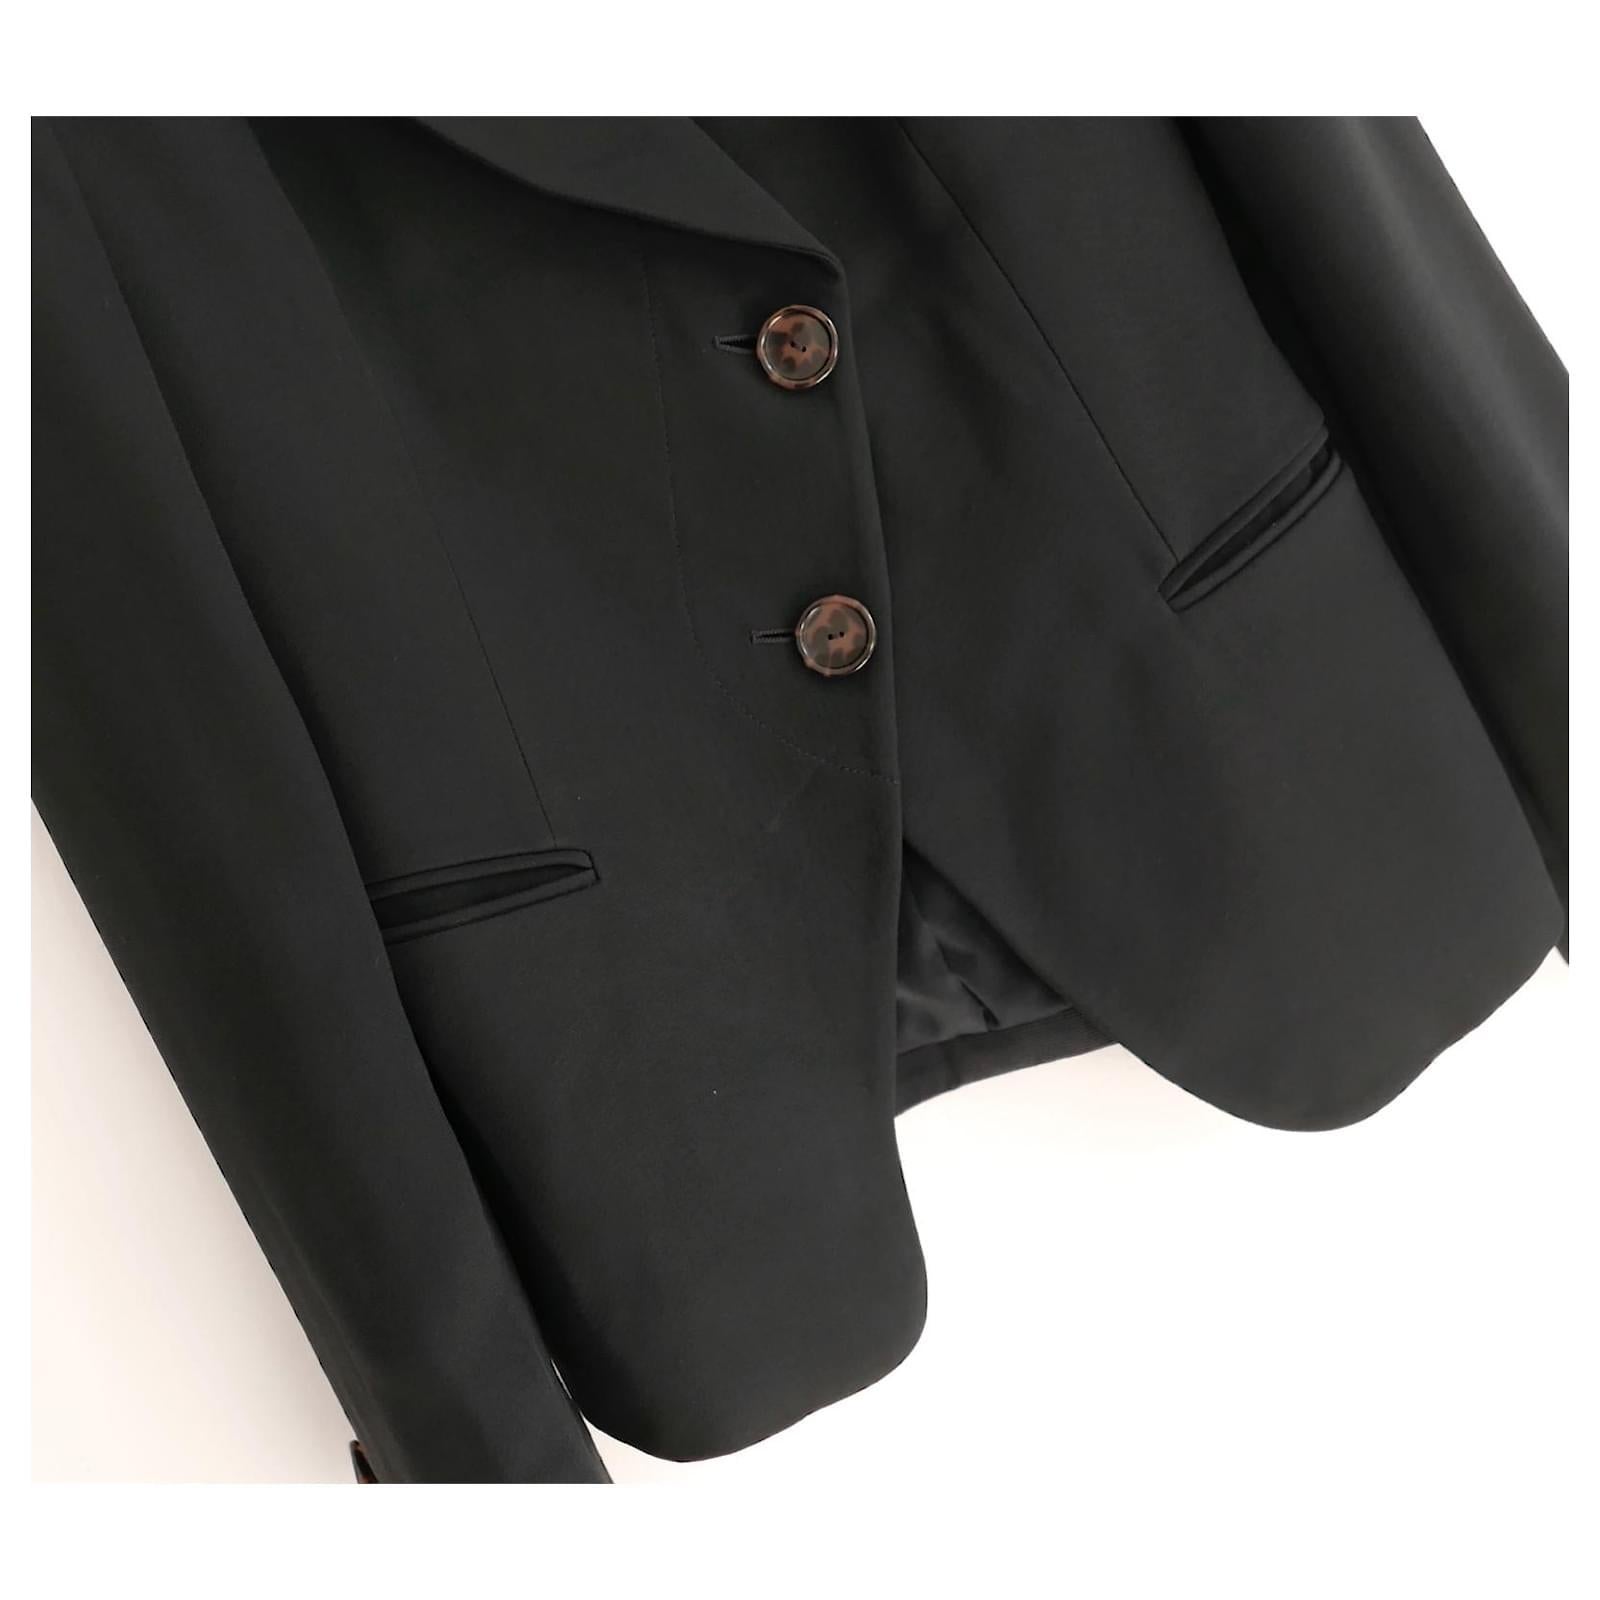 Veste de blazer Giorgio Armani des années 2000, très tendance et d'archives. Porté une fois. Réalisé en crêpe noir lisse mélangé à de la viscose et doublé de satin. Superbement taillé avec une coupe surdimensionnée, un devant asymétrique doublé de